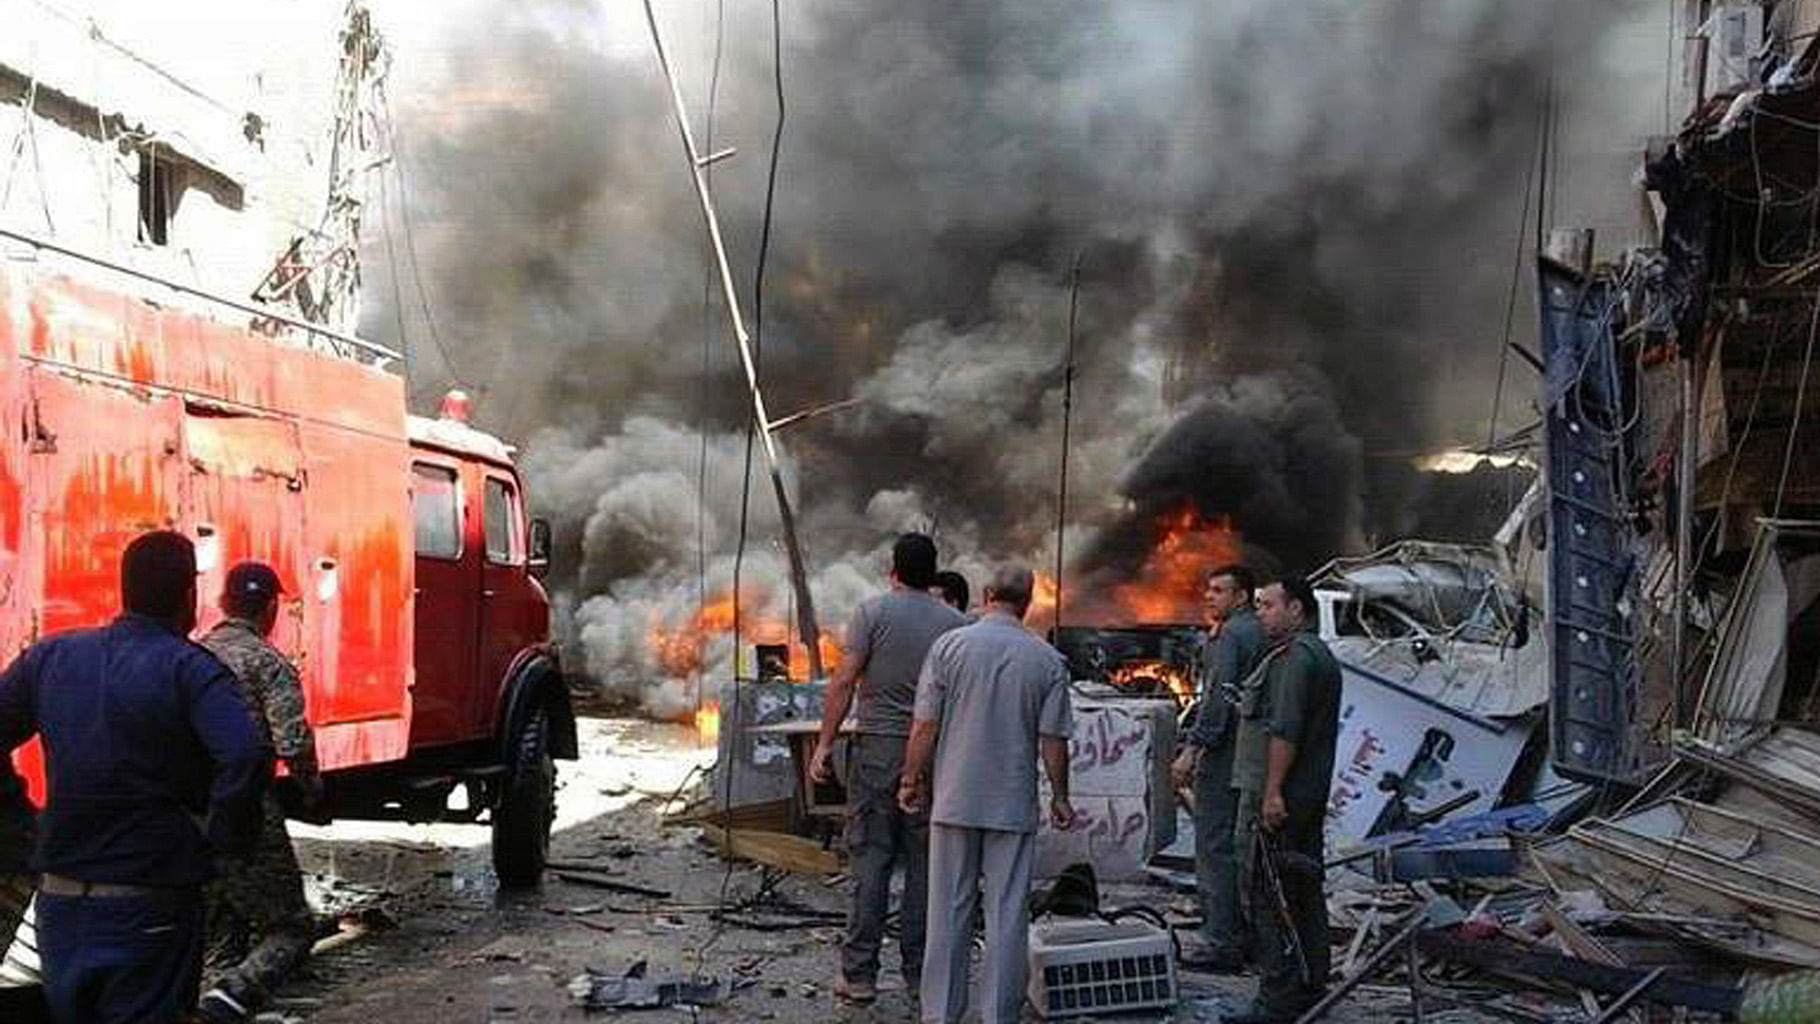 Теракты последних лет в мире. Взрывы в Крыму. Теракты в Дамаске в июне 2013 года.